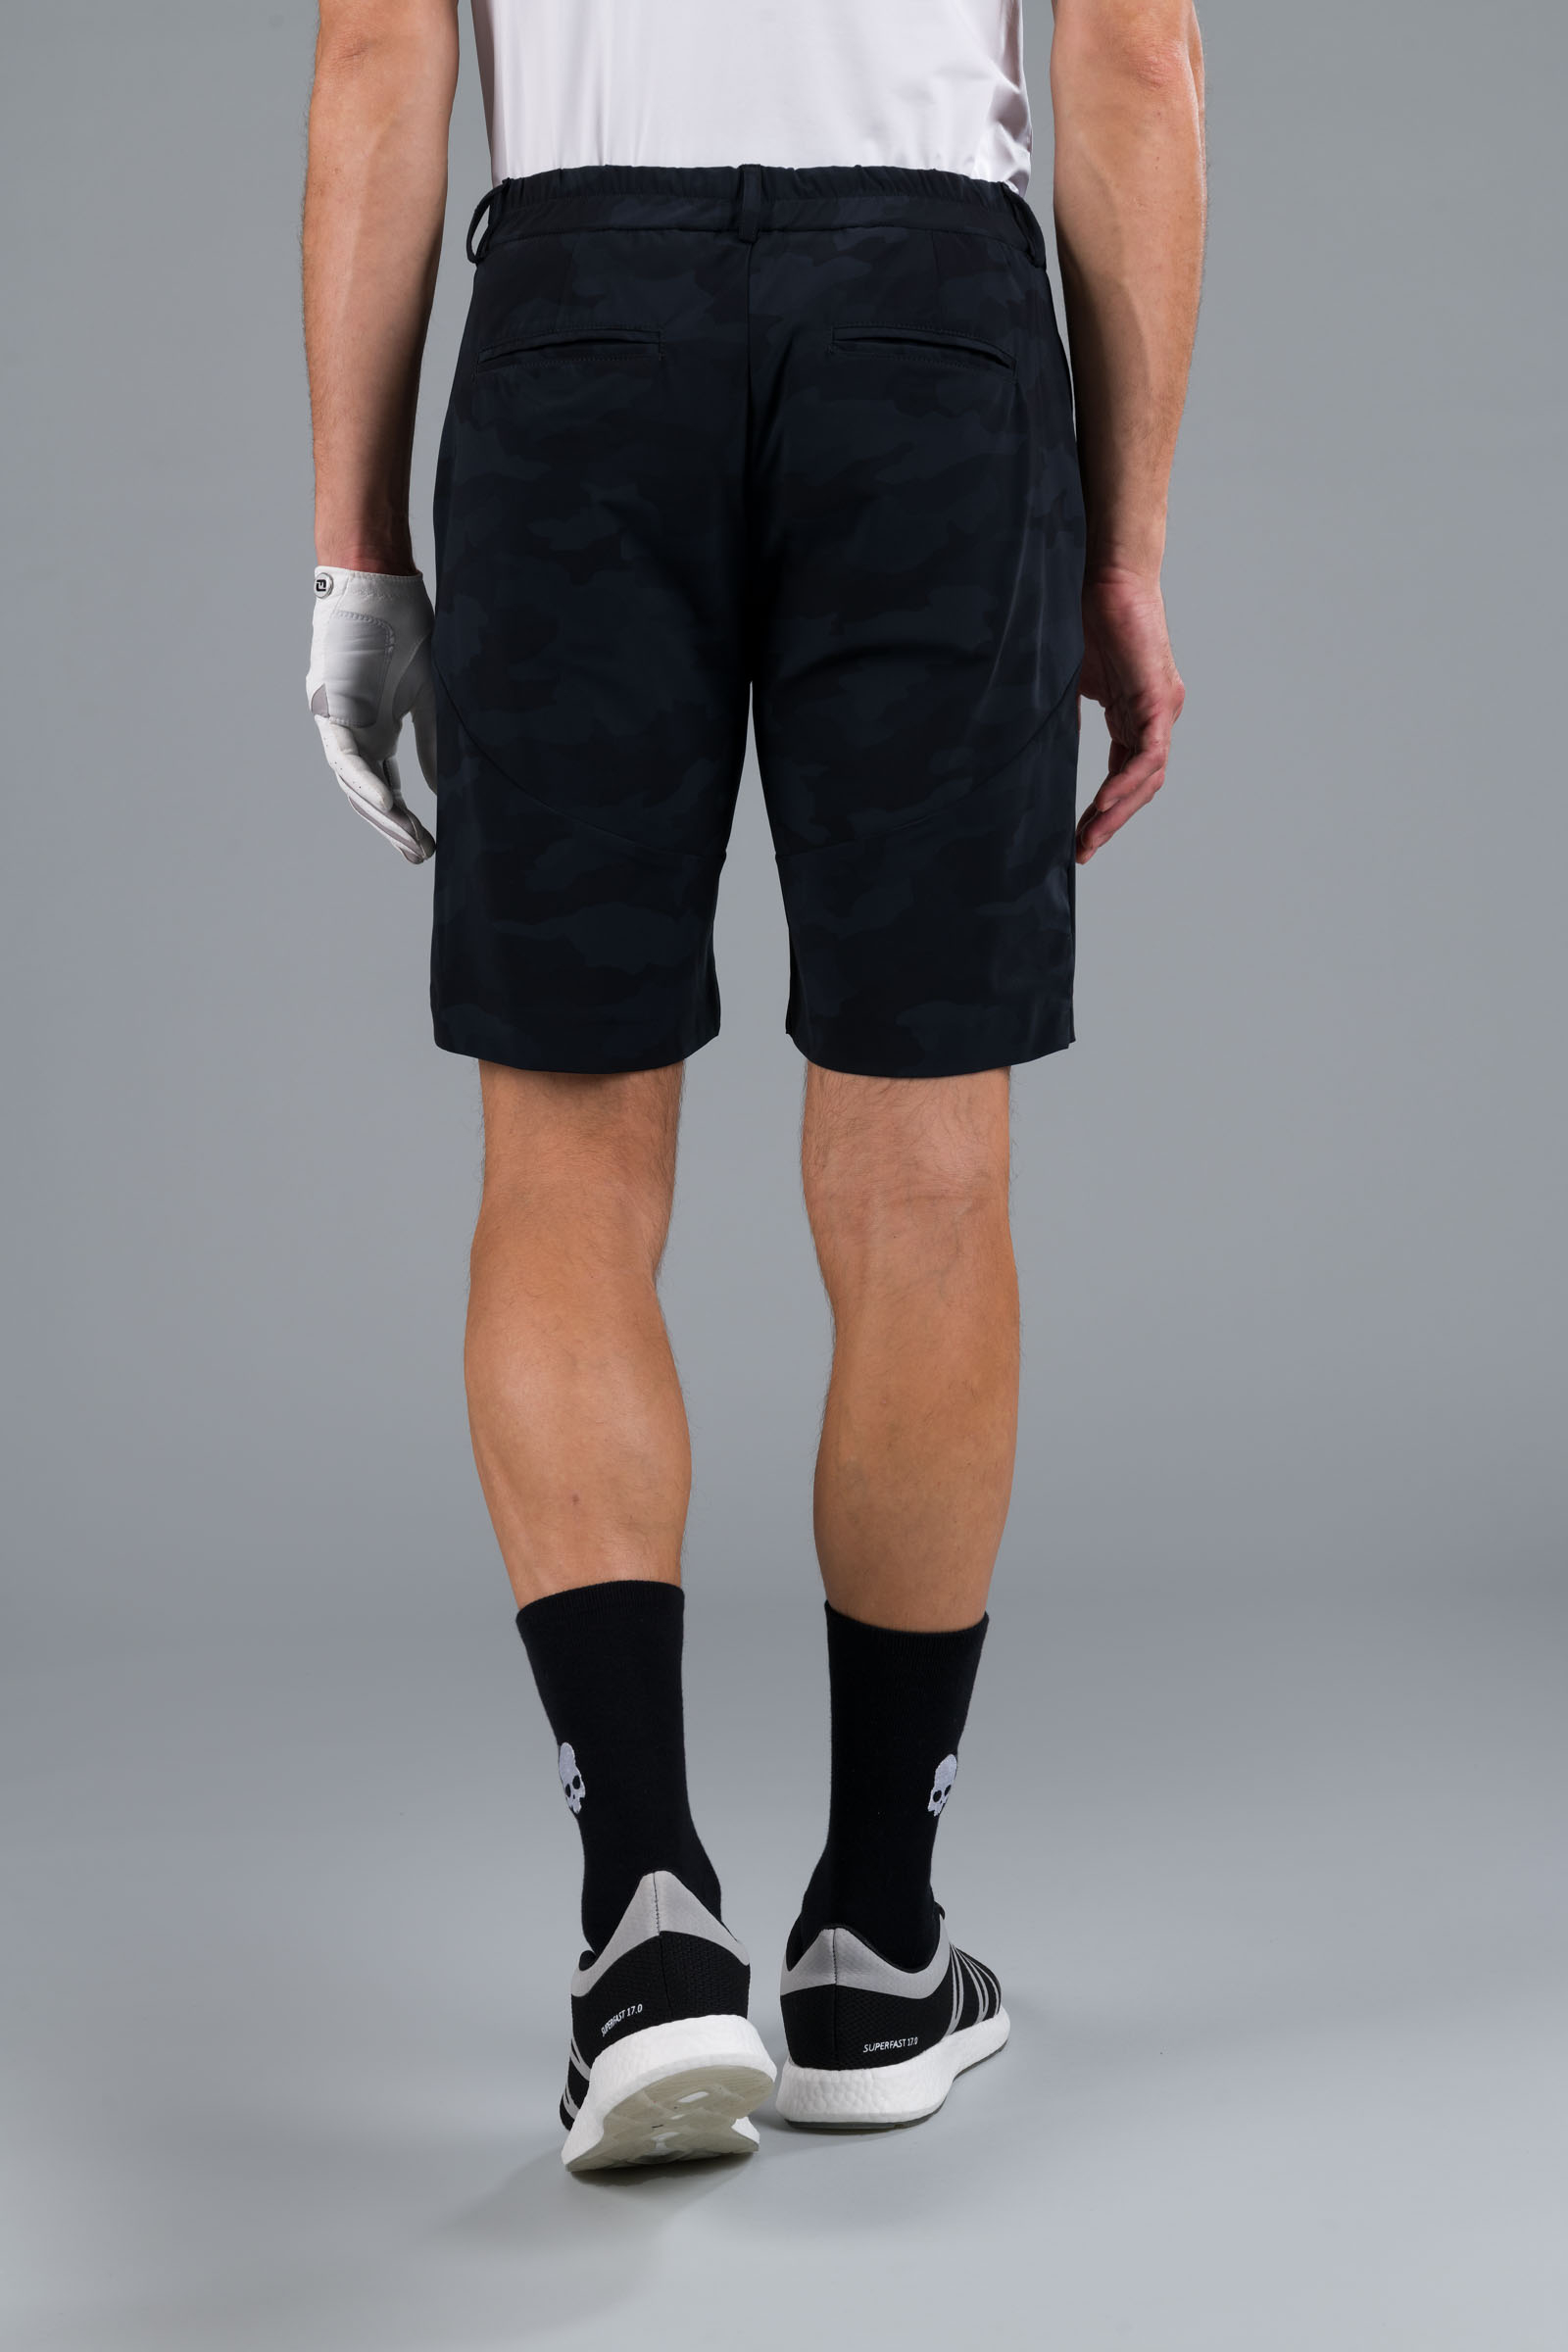 GOLF SHORTS - BLACK CAMOUFLAGE - Abbigliamento sportivo | Hydrogen